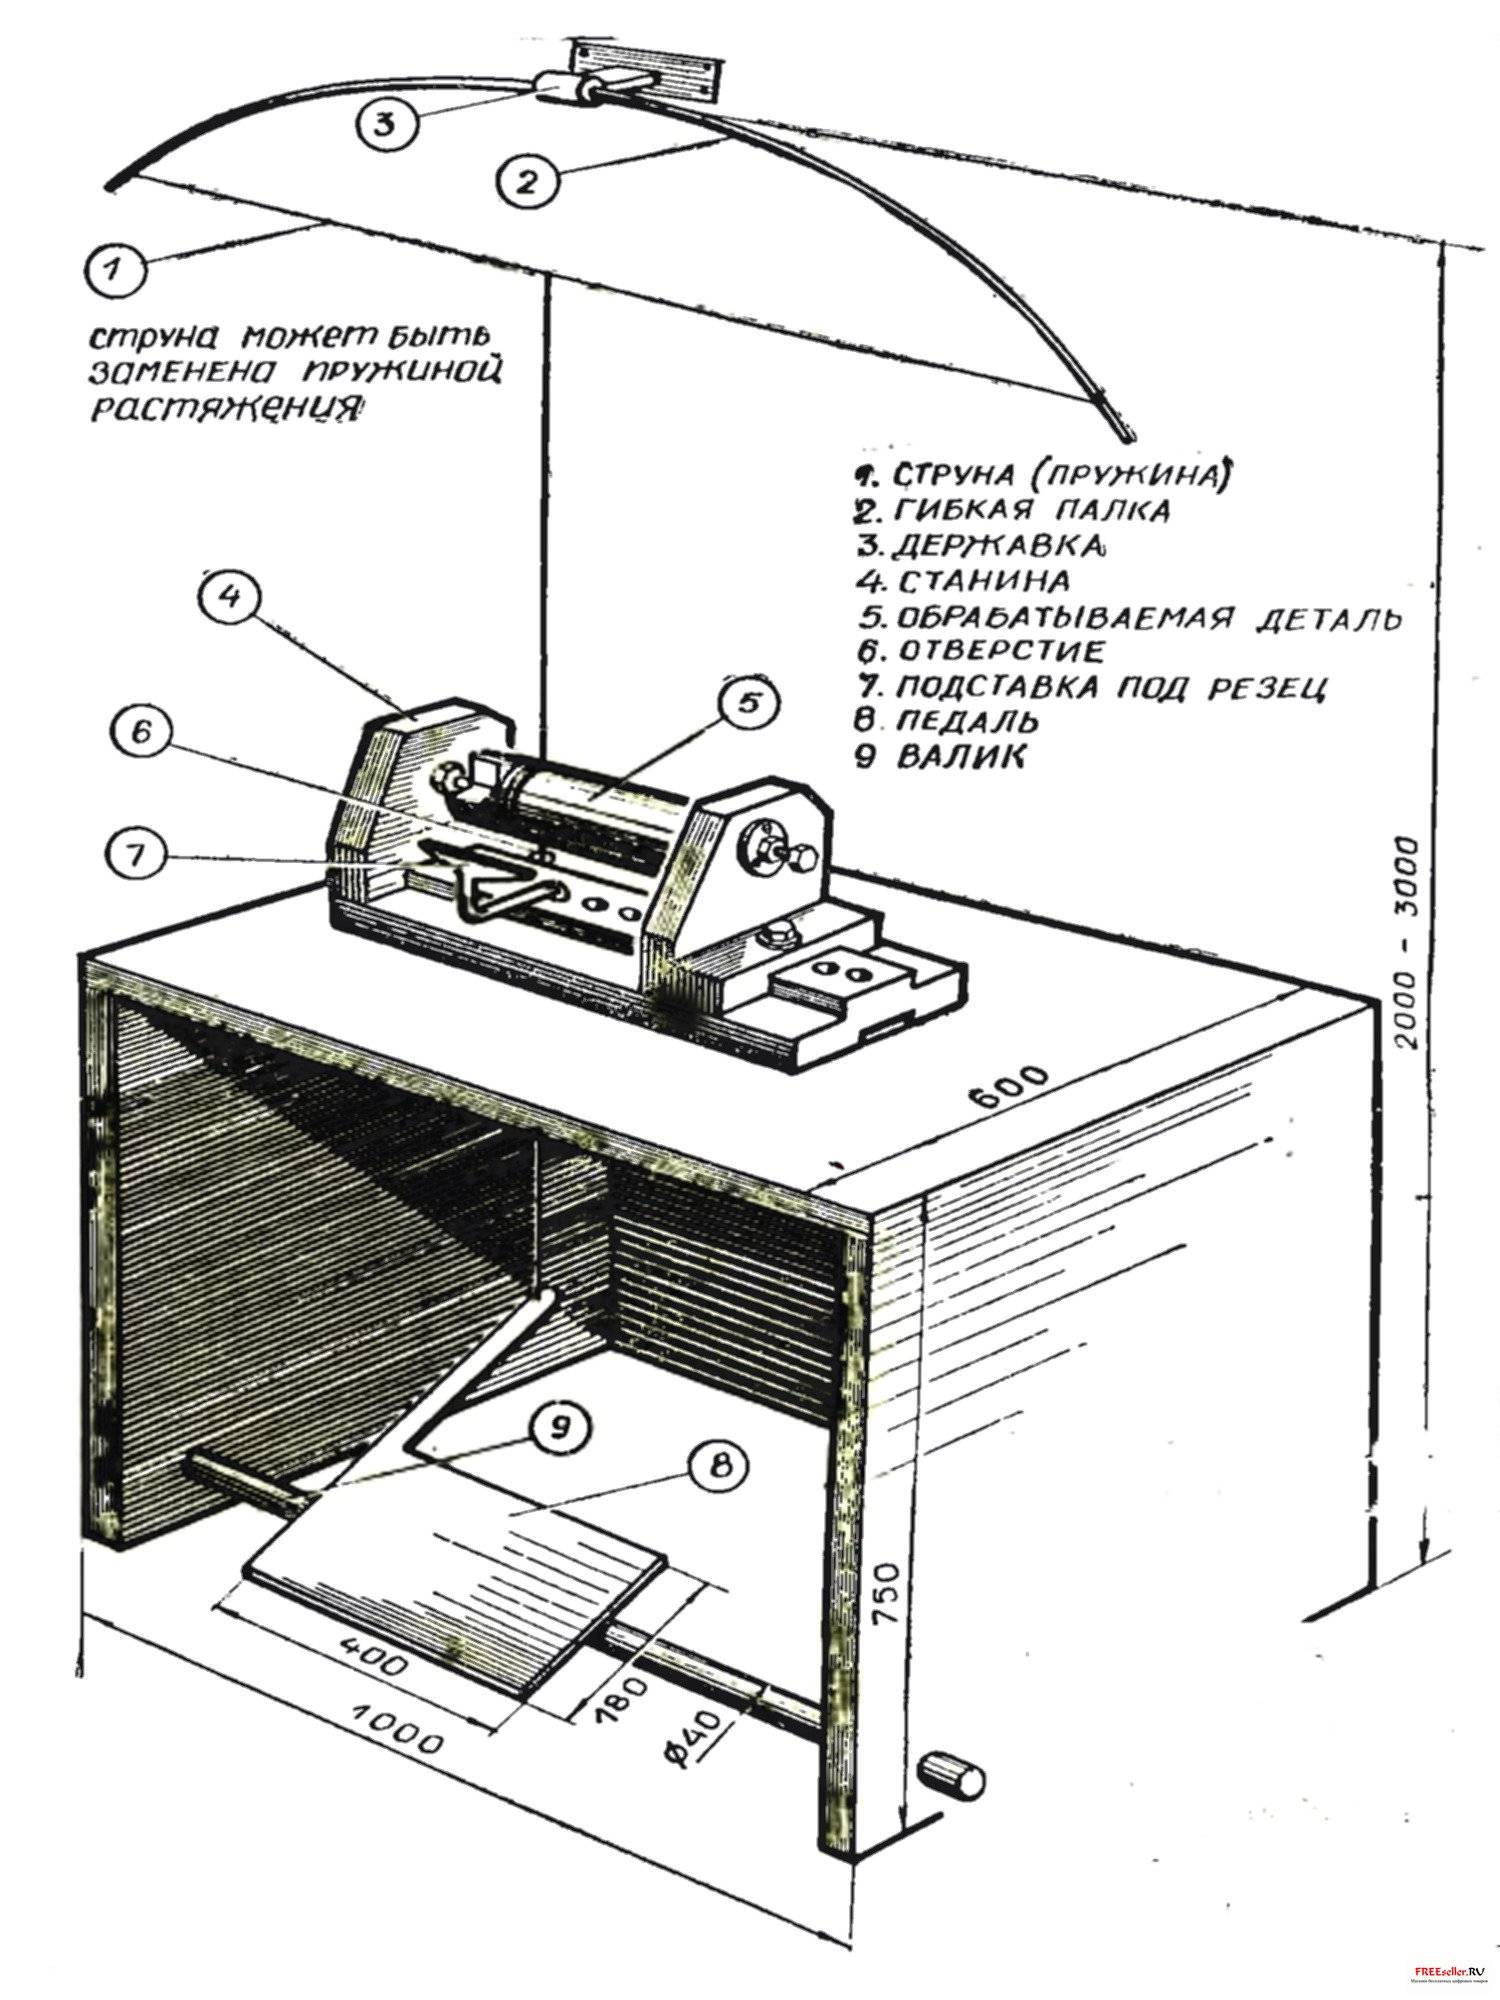 Приспособления и станки для домашней мастерской по дереву и металлу: чертежи, видео